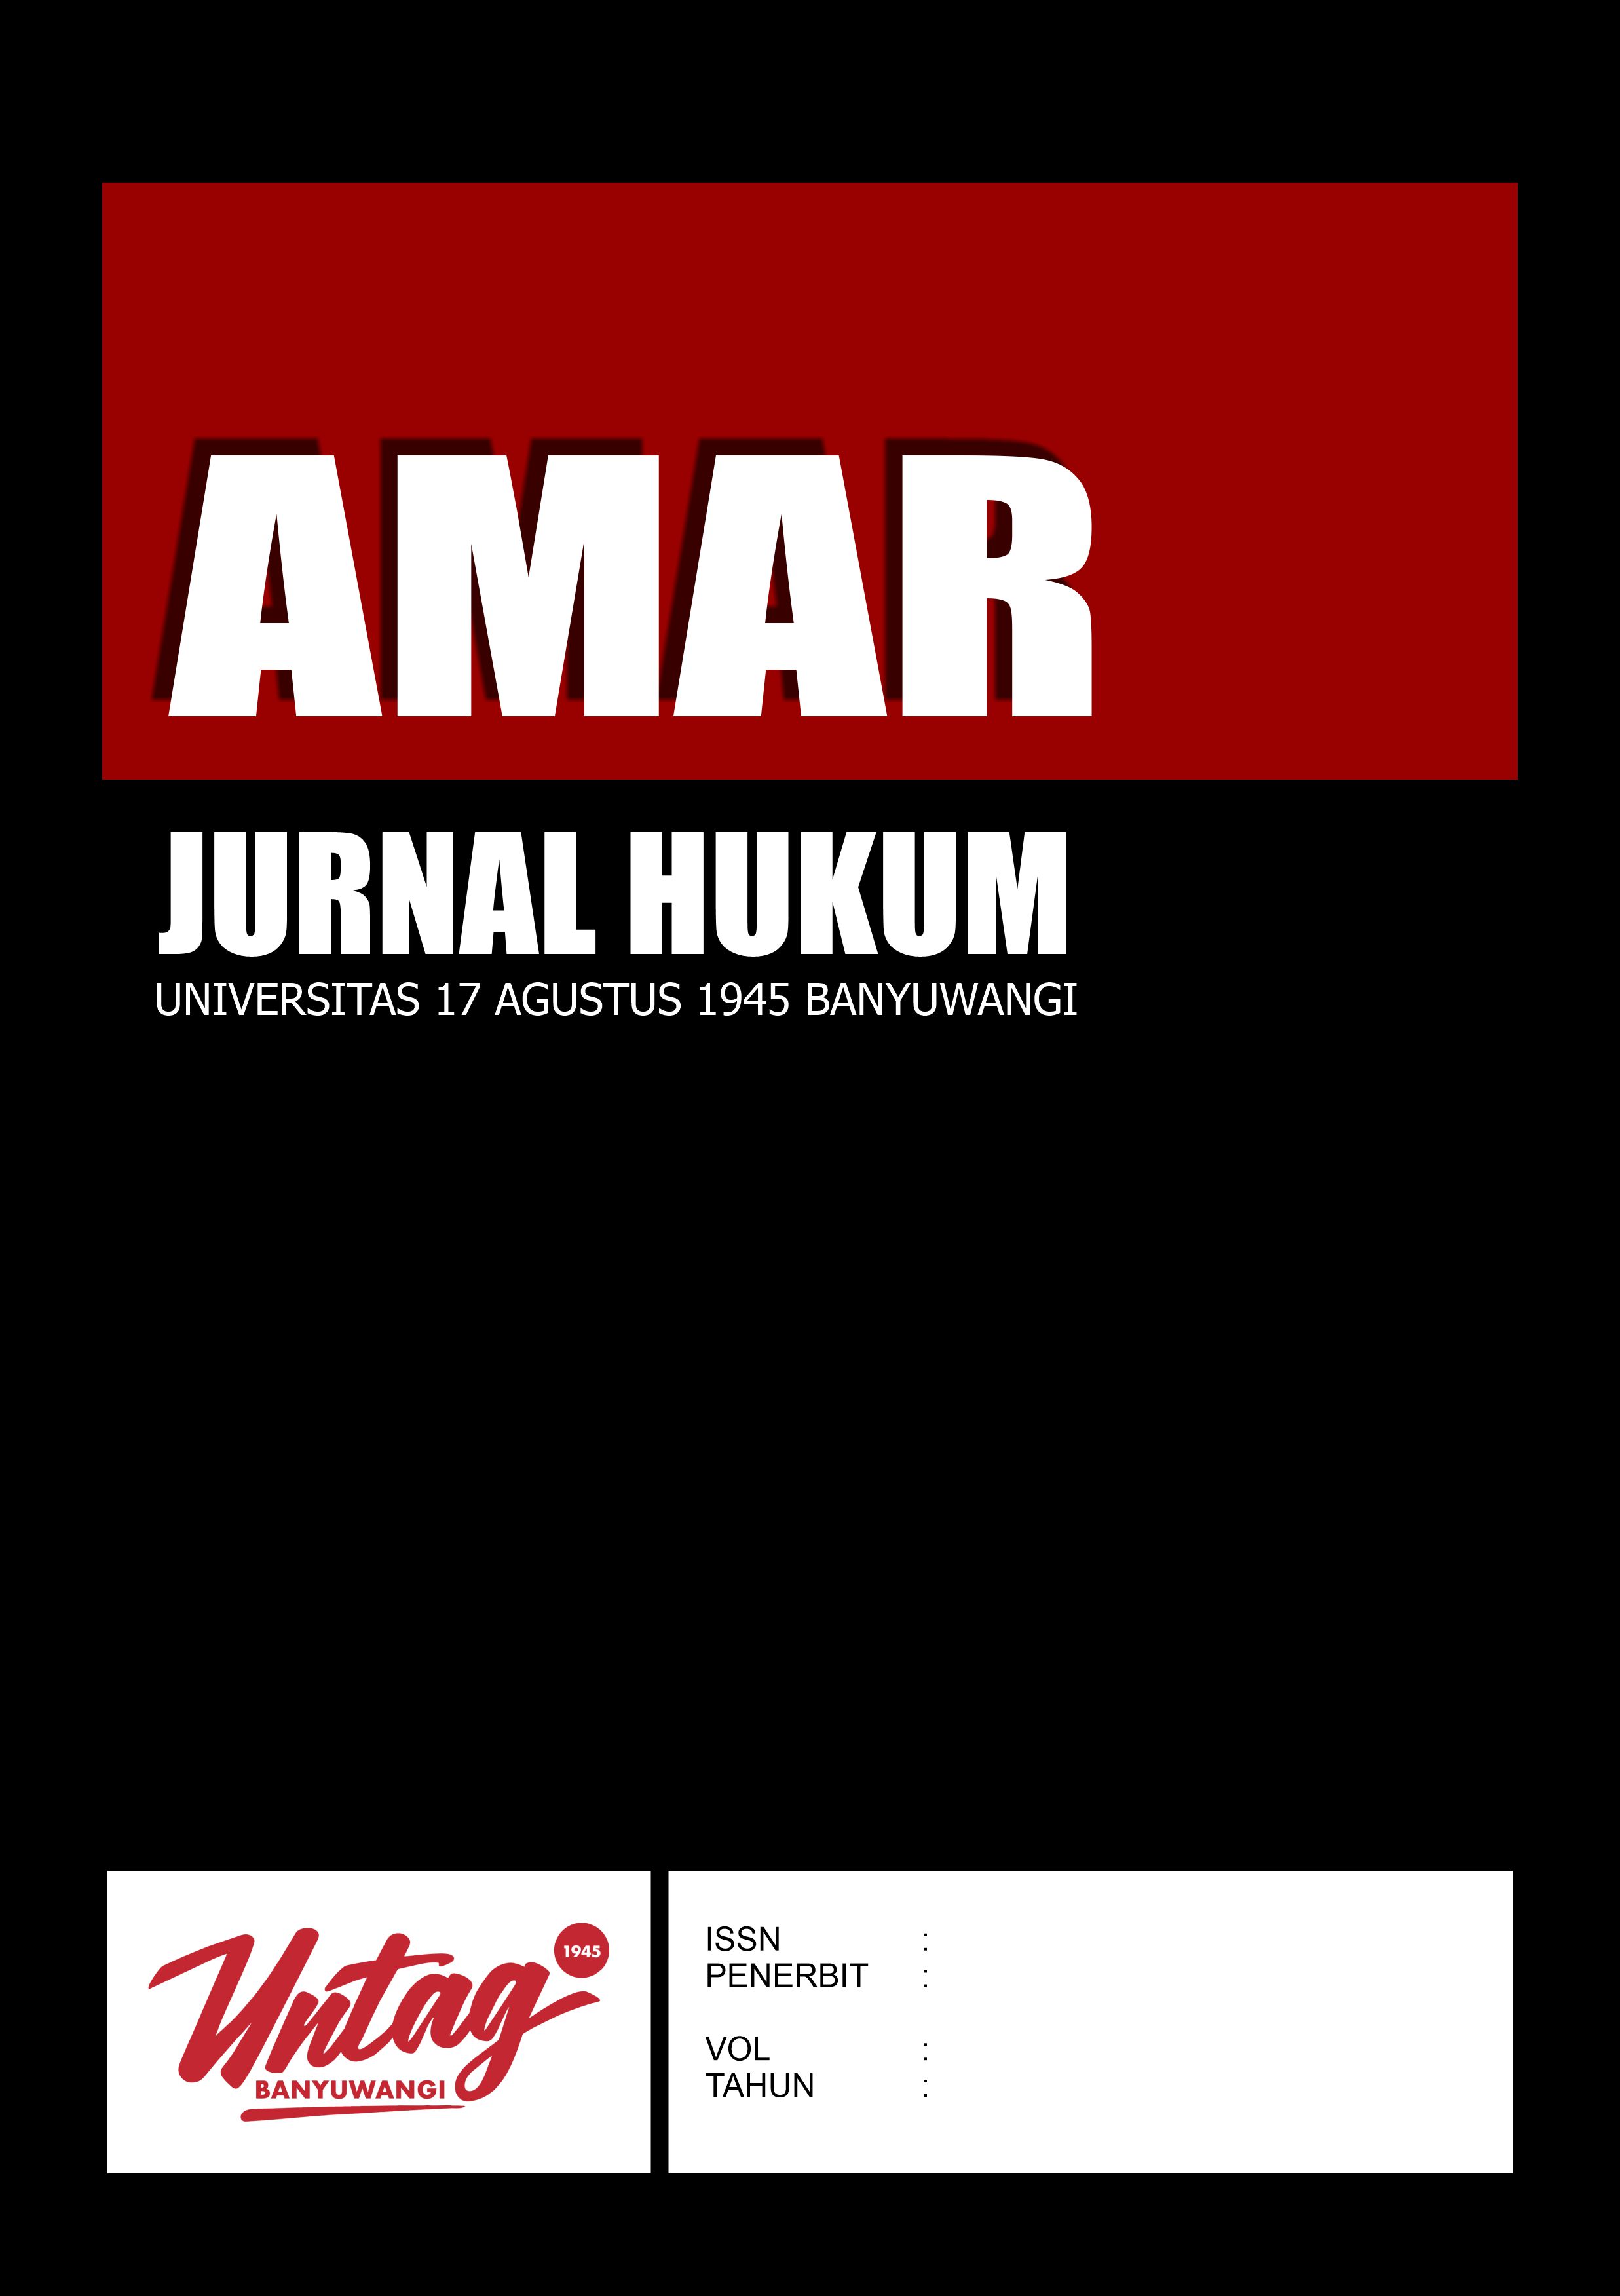 					Lihat Vol 1 No 1 (2021): AMAR - JURNAL HUKUM
				